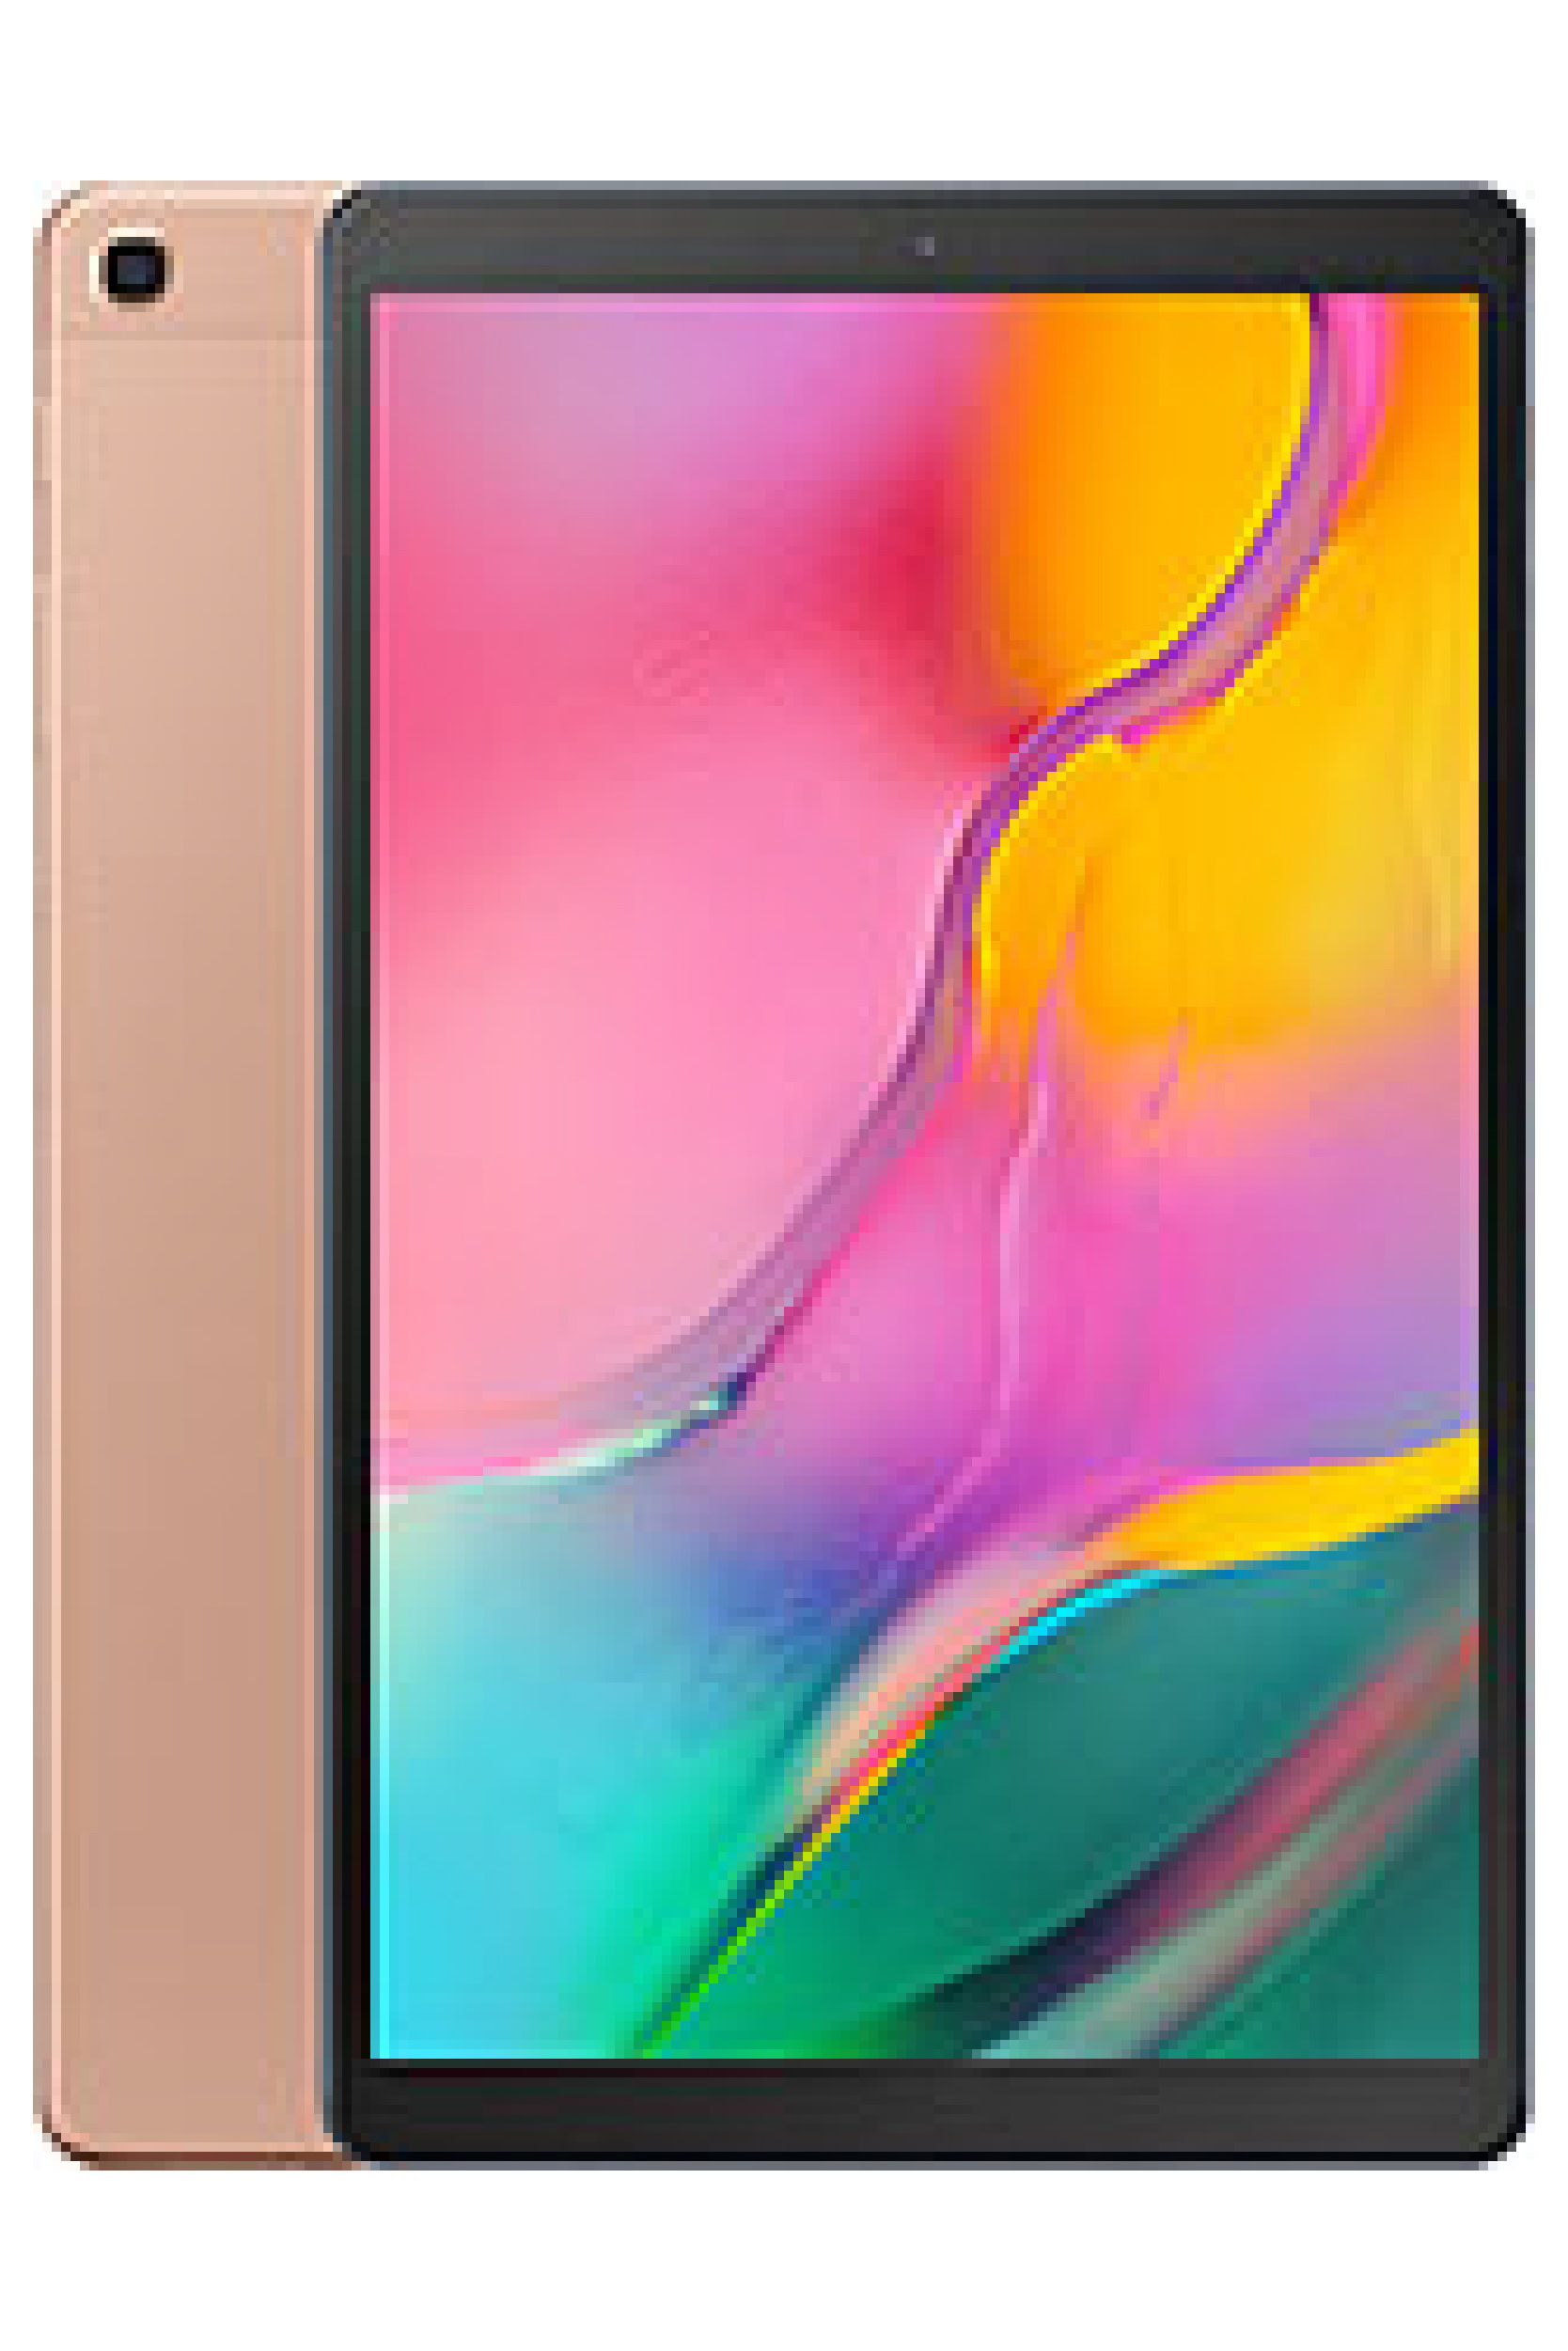 Samsung Galaxy Tab A 10 1 2019 Price In Pakistan Specs Propakistani